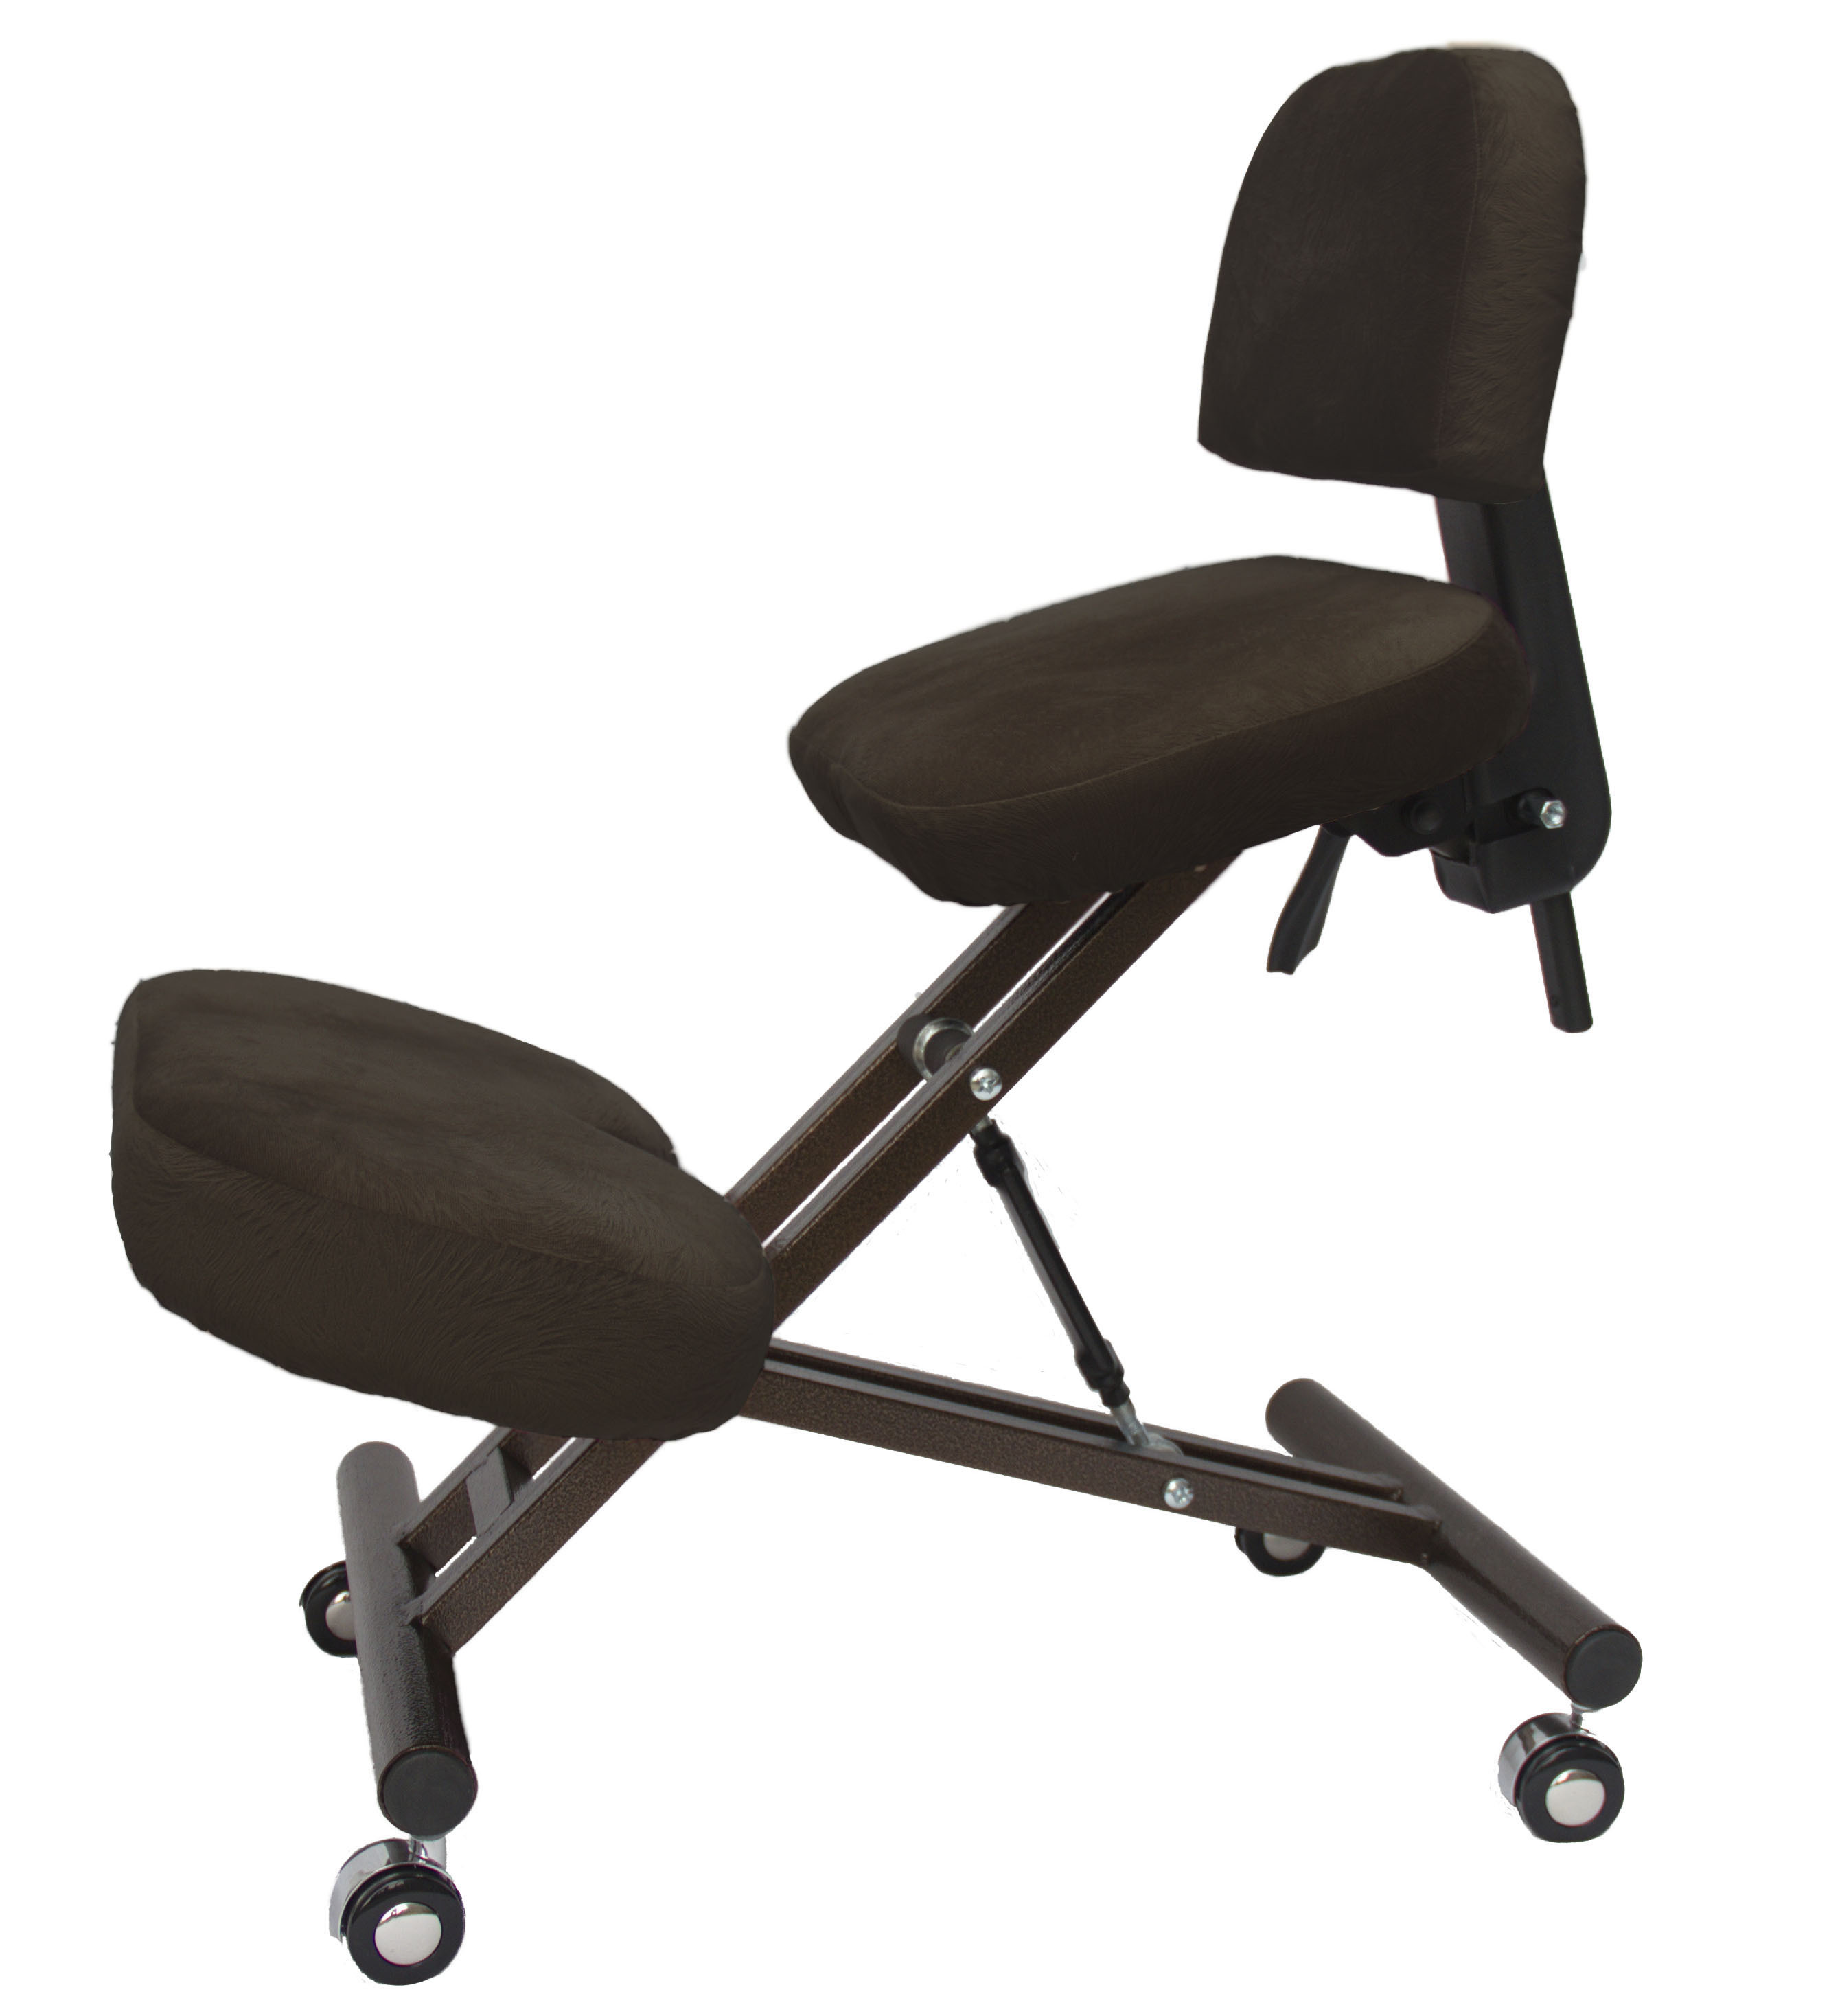 коленный стул со спинкой kw02b